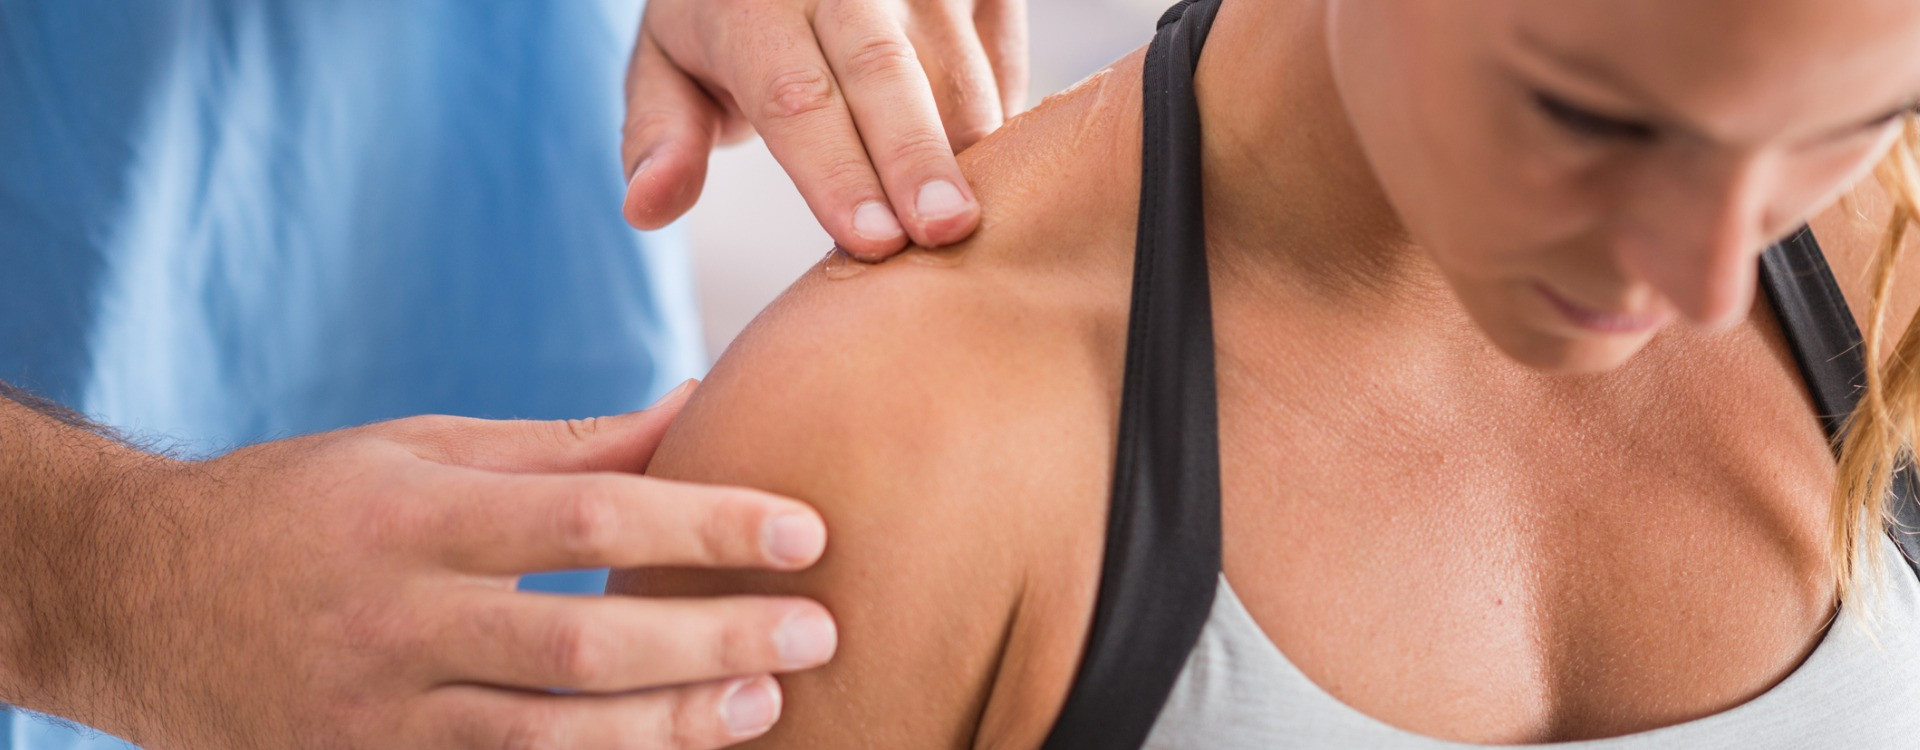 Contracture à l'épaule : symptômes, causes et traitements - Bluetens